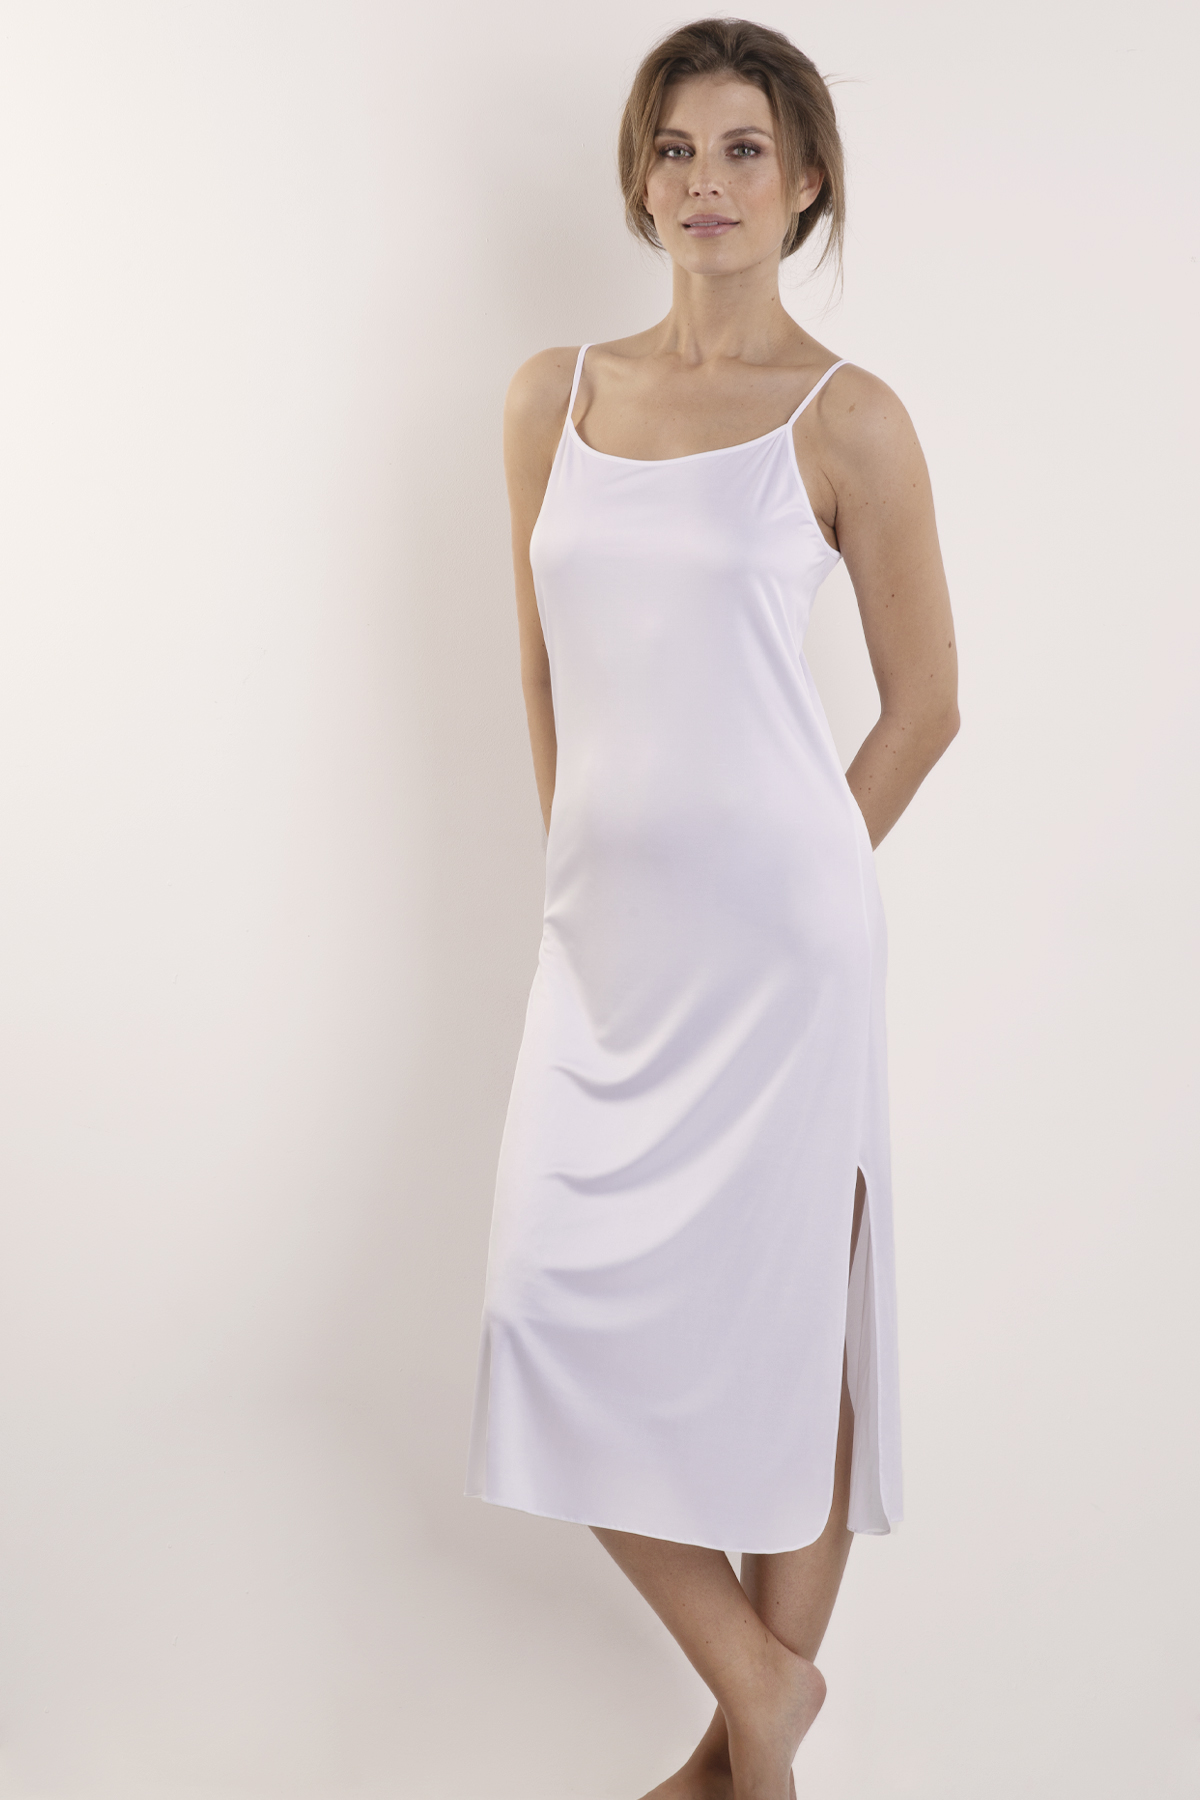 Nina von C. Silver Edition Unterkleid - Siemers Online-Shop